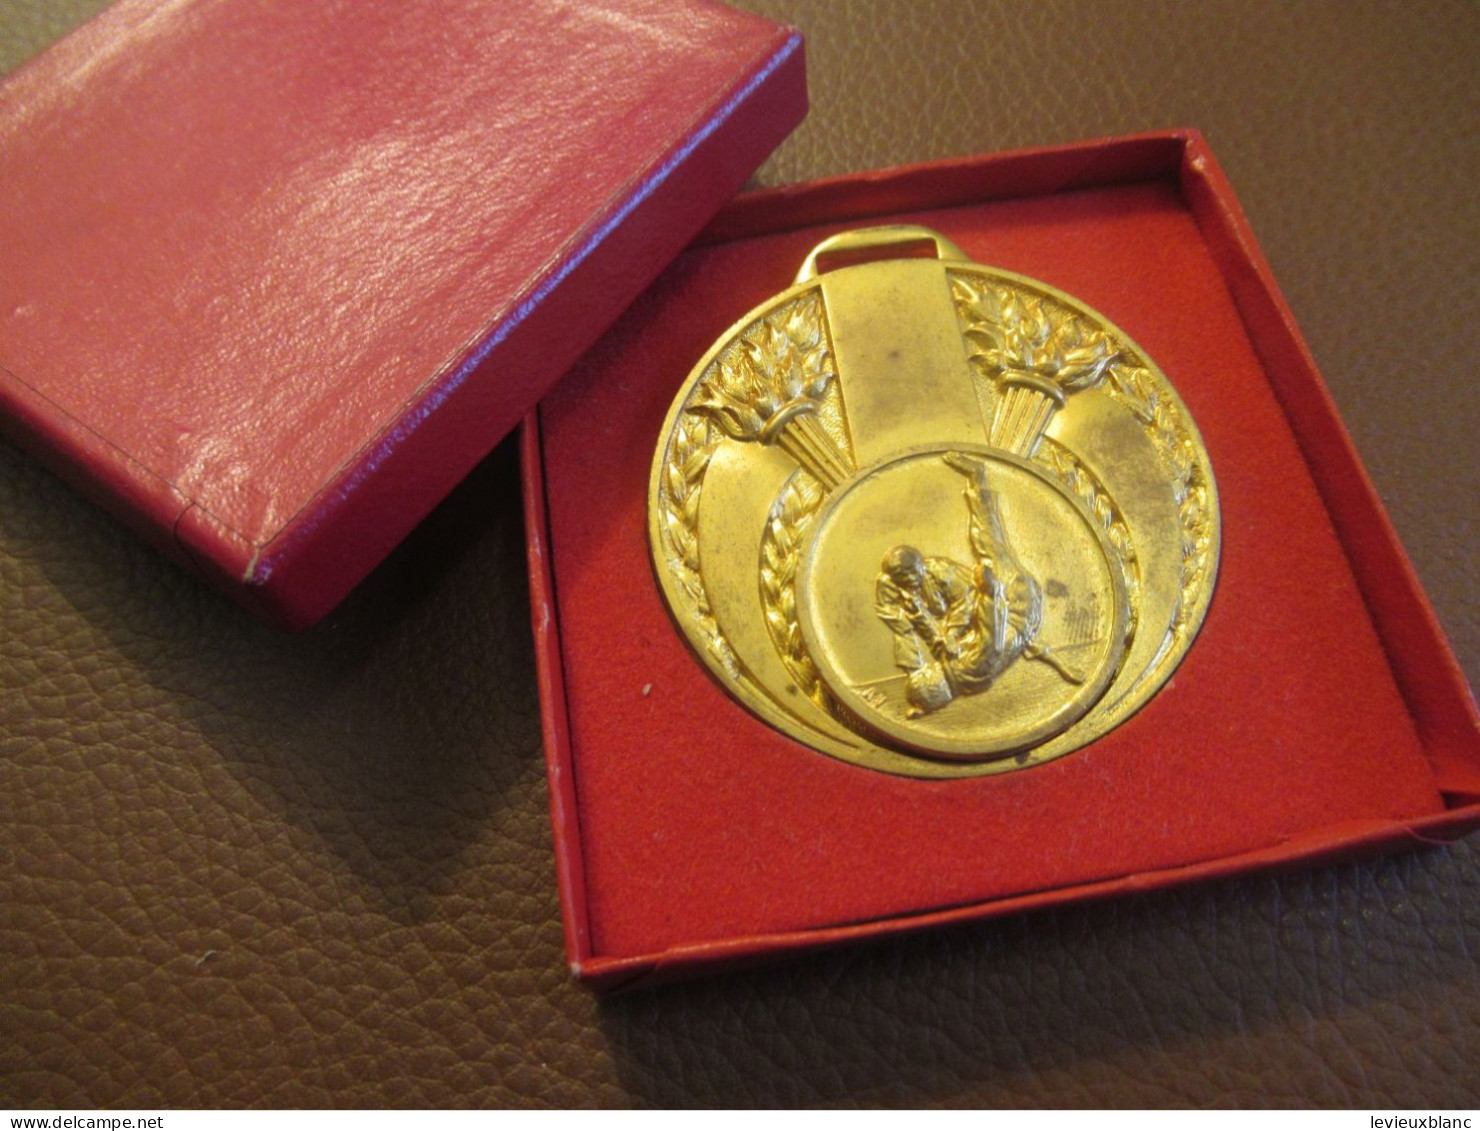 JUDO / Médaille De Compétition / Attribuée/ Bronze Doré / Espoir A.S.M. 1975 /1975    SPO469 - Gevechtssport